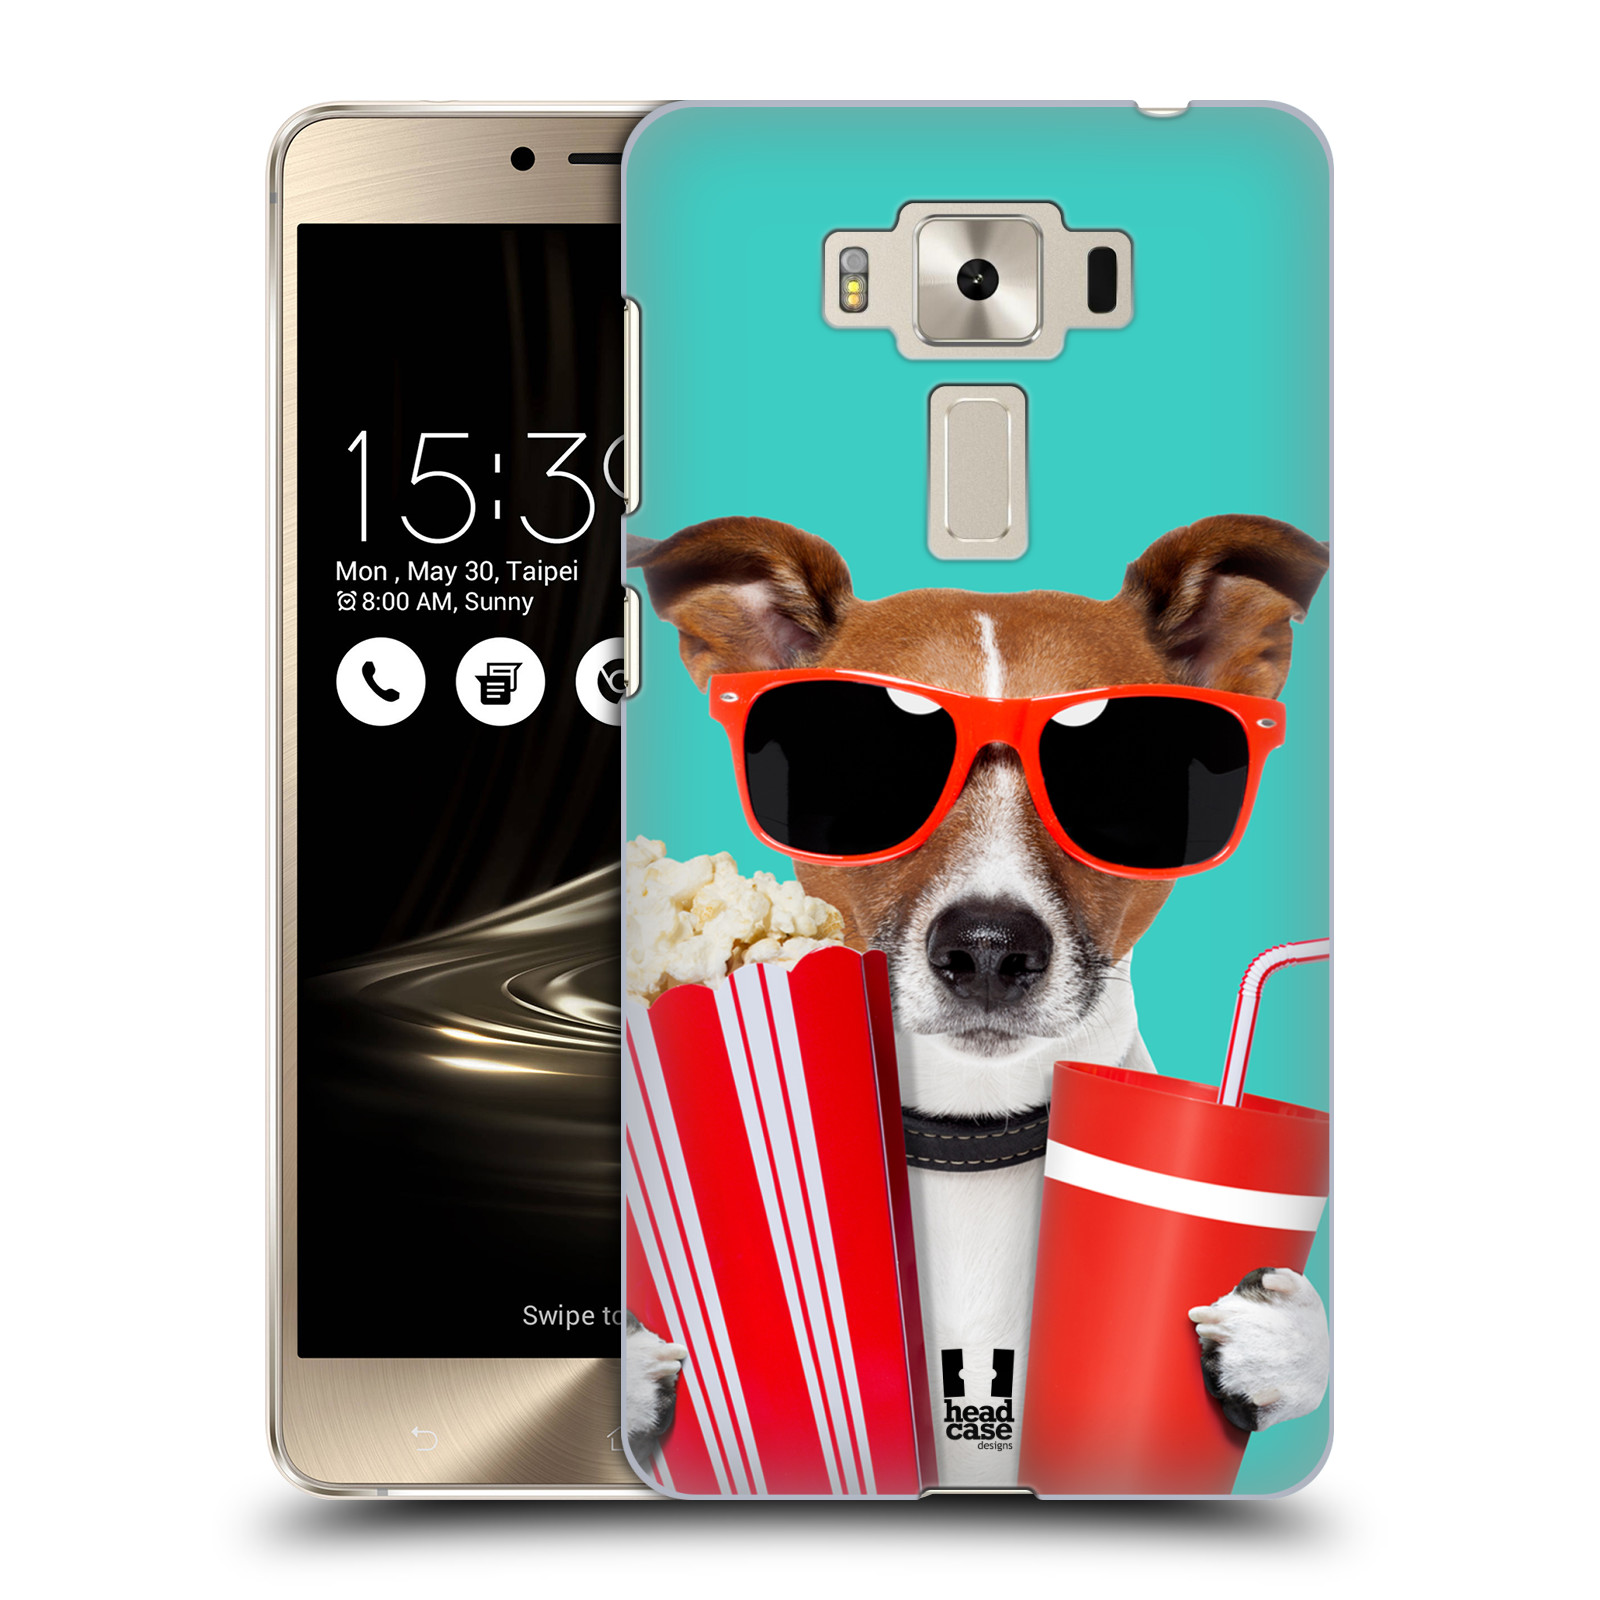 HEAD CASE plastový obal na mobil Asus Zenfone 3 DELUXE ZS550KL vzor Legrační zvířátka pejsek v kině s popkornem